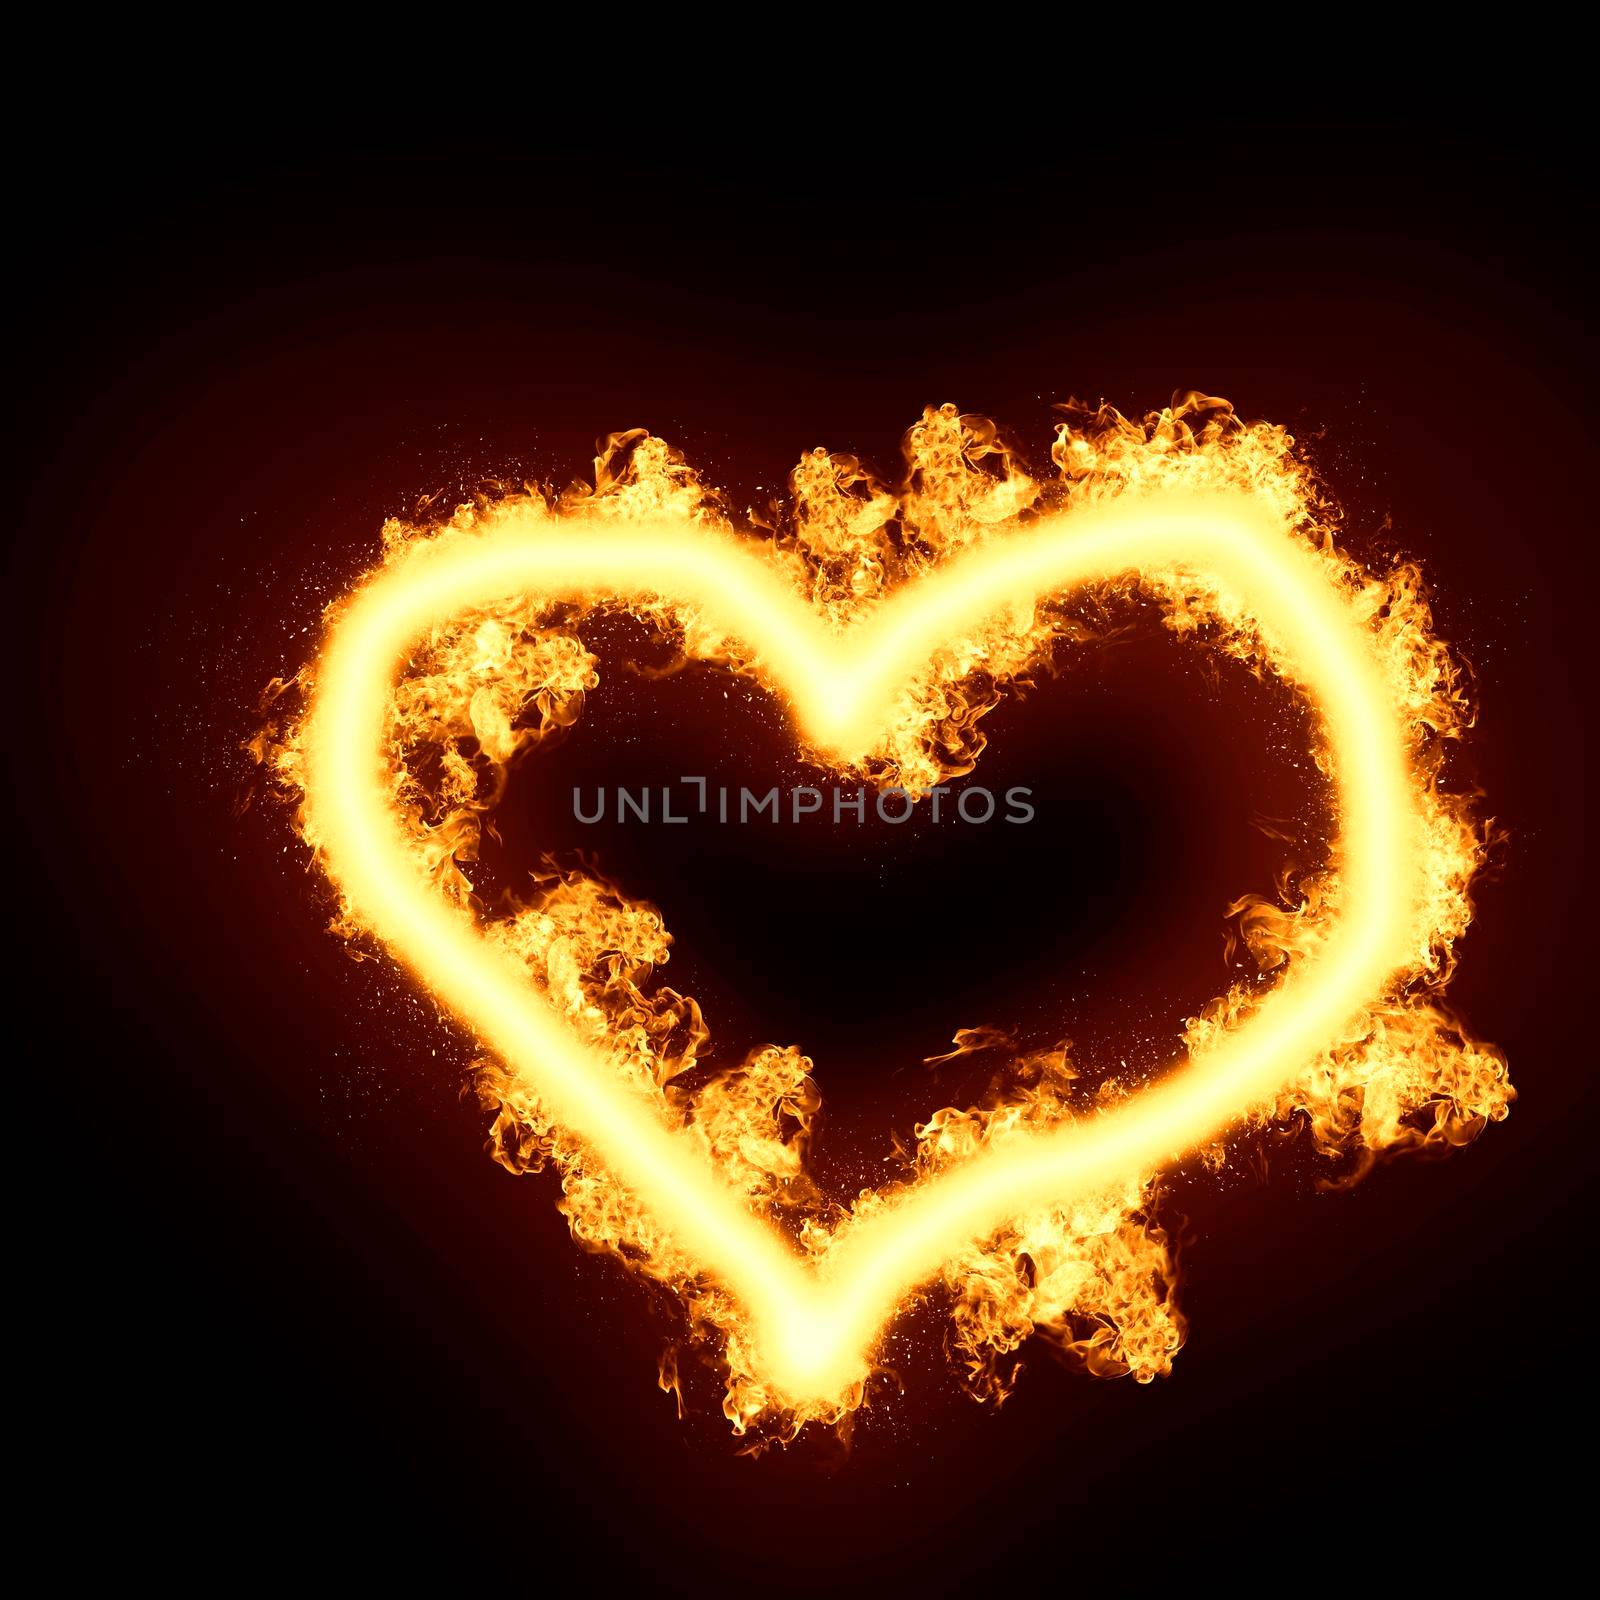 Illustration of burning heart isolated on black background by Mariakray